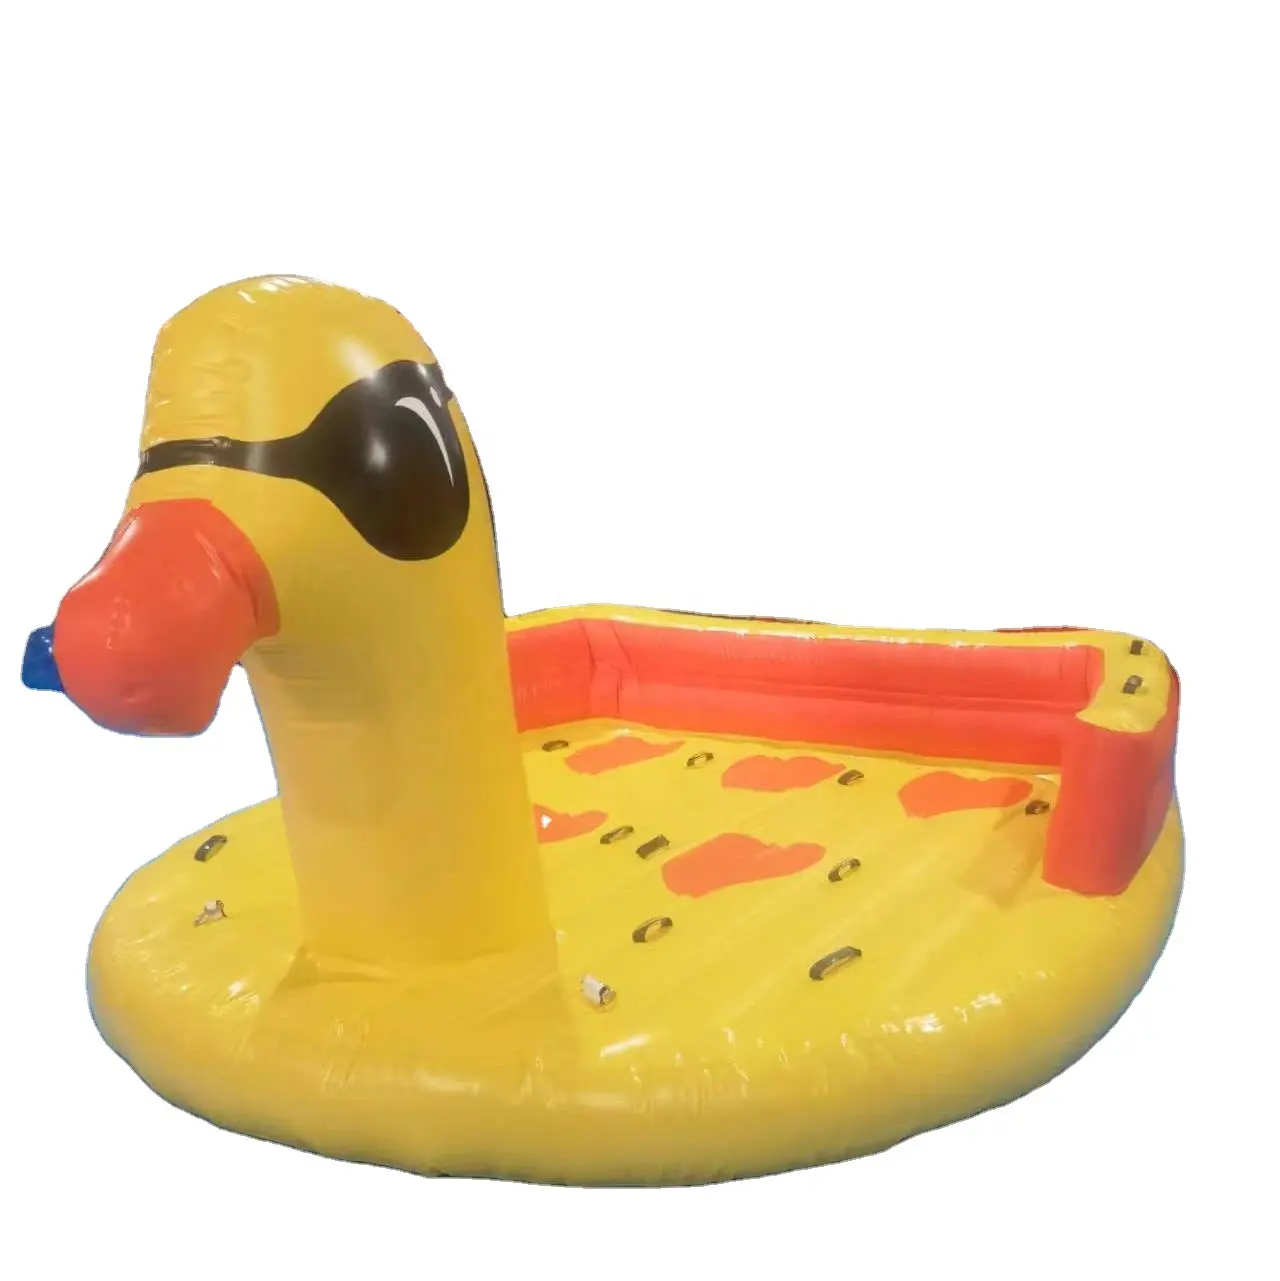 Grande version de canard jaune gonflable flottant île lac/mer, sièges pour flotteur de piscine gonflable avec conception personnalisée